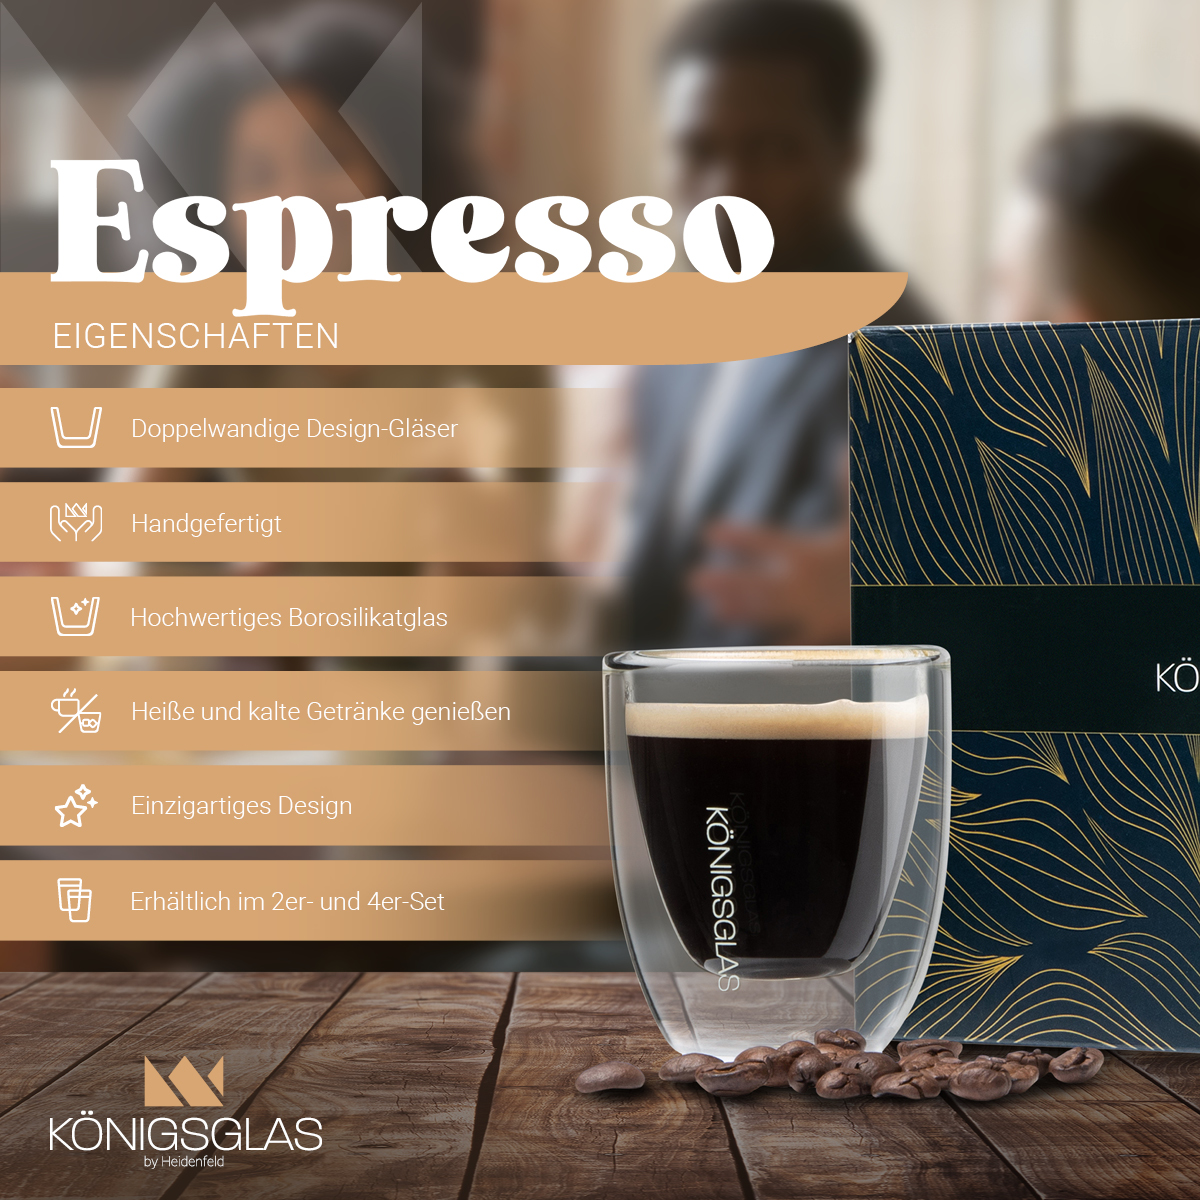 HEIDENFELD Königsglas Espresso 80 Kaffeegläser 4x ml